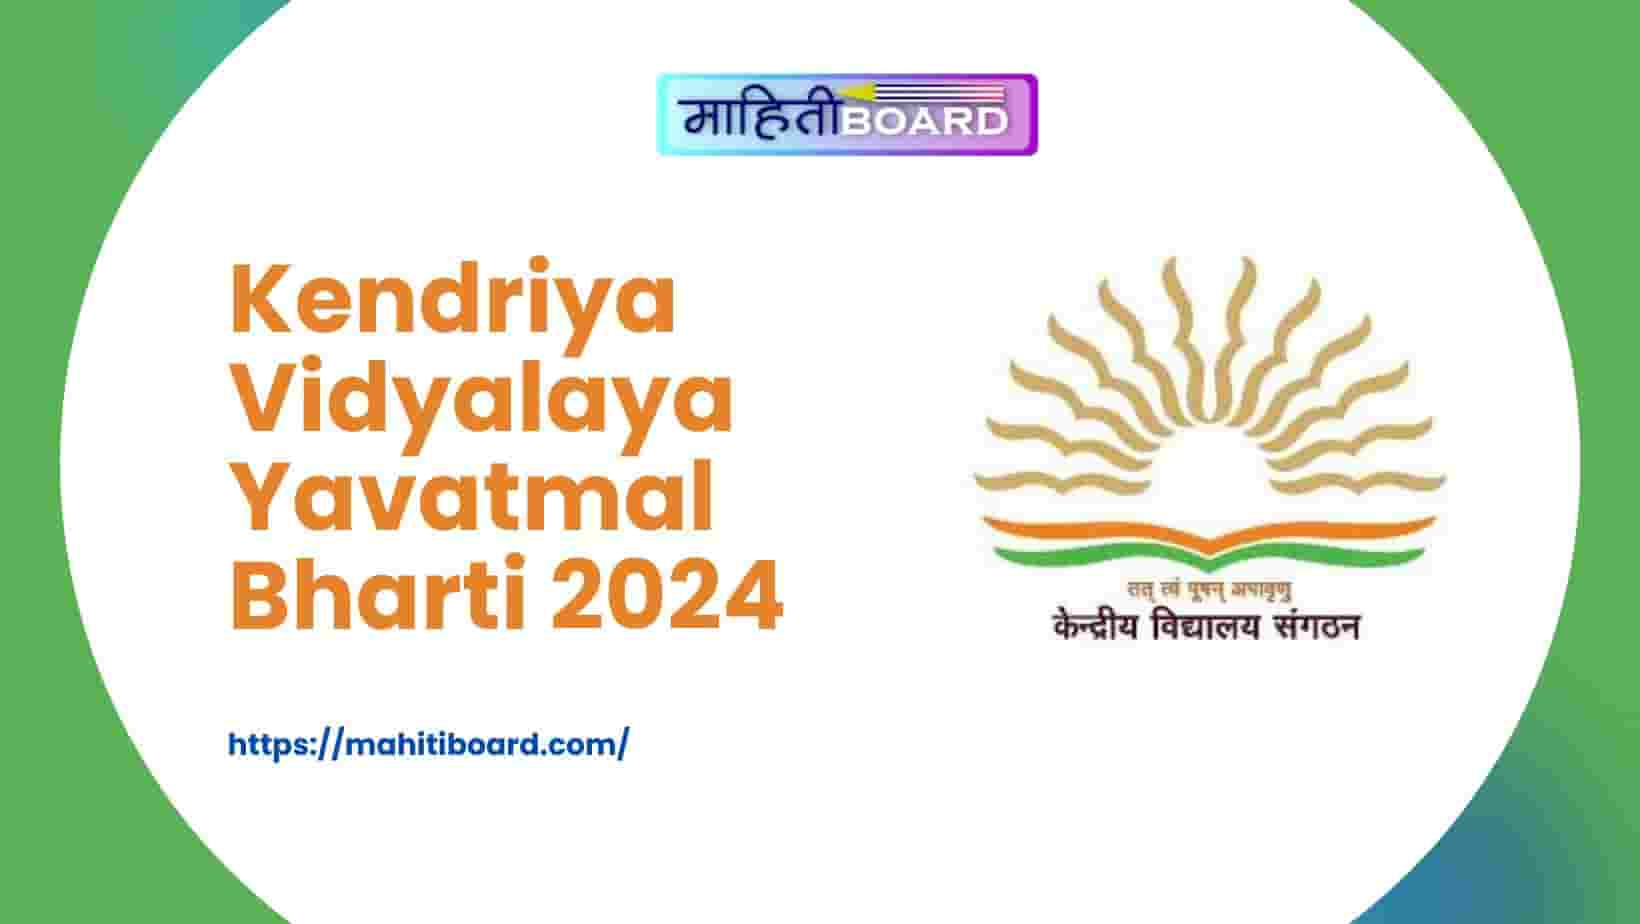 Kendriya Vidyalaya Yavatmal Bharti 2024